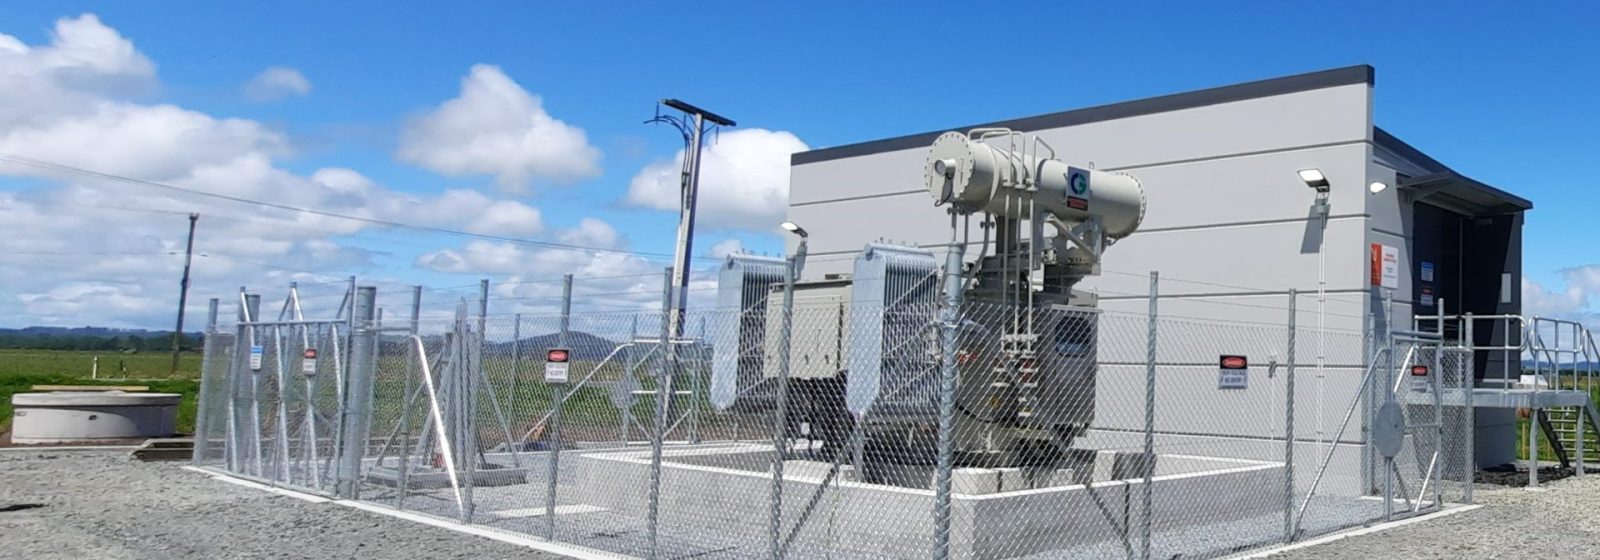 Ruawai Substation Construction Monitoring - Header Image